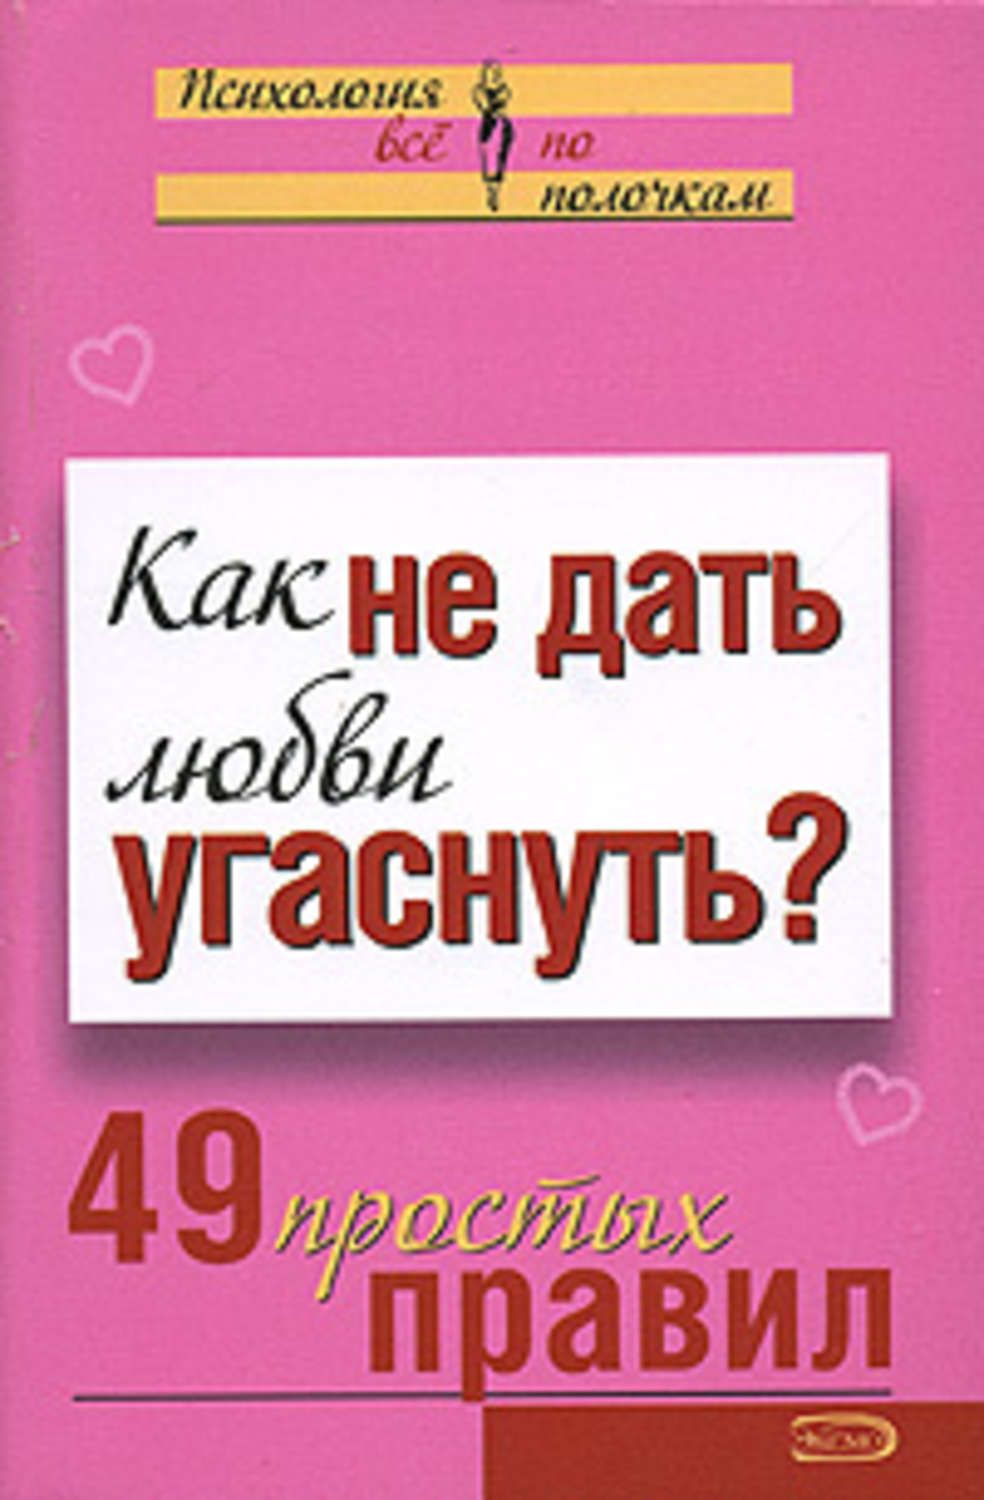 Обложка книги "Как не дать любви угаснуть? 49 простых правил"